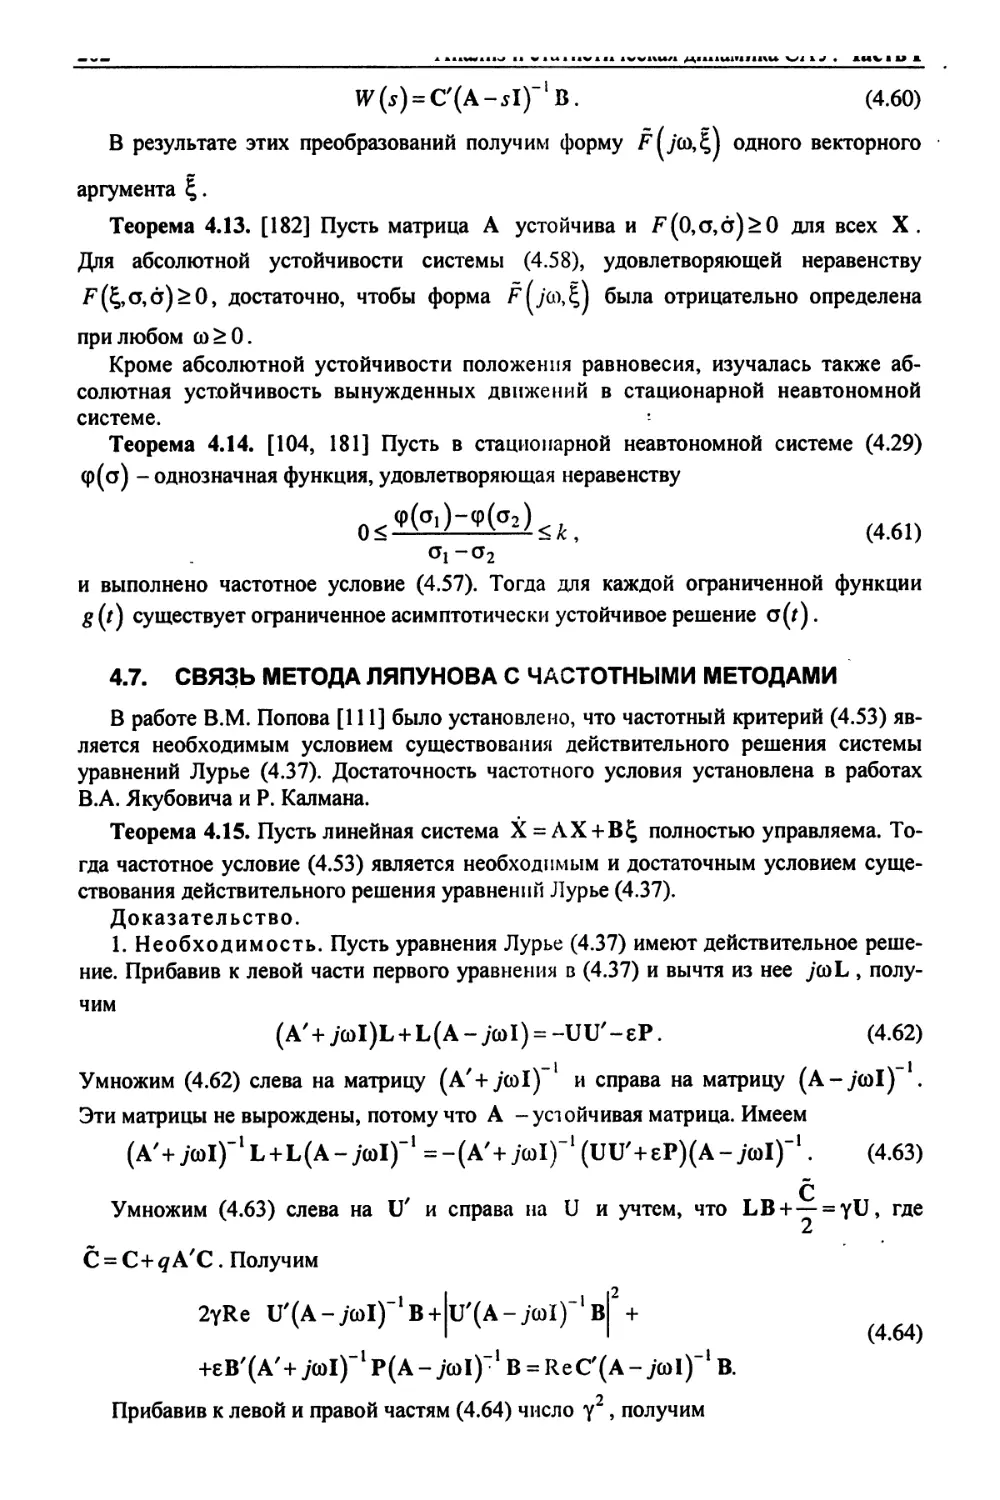 4.7. Связь метода Ляпунова с частотными методами